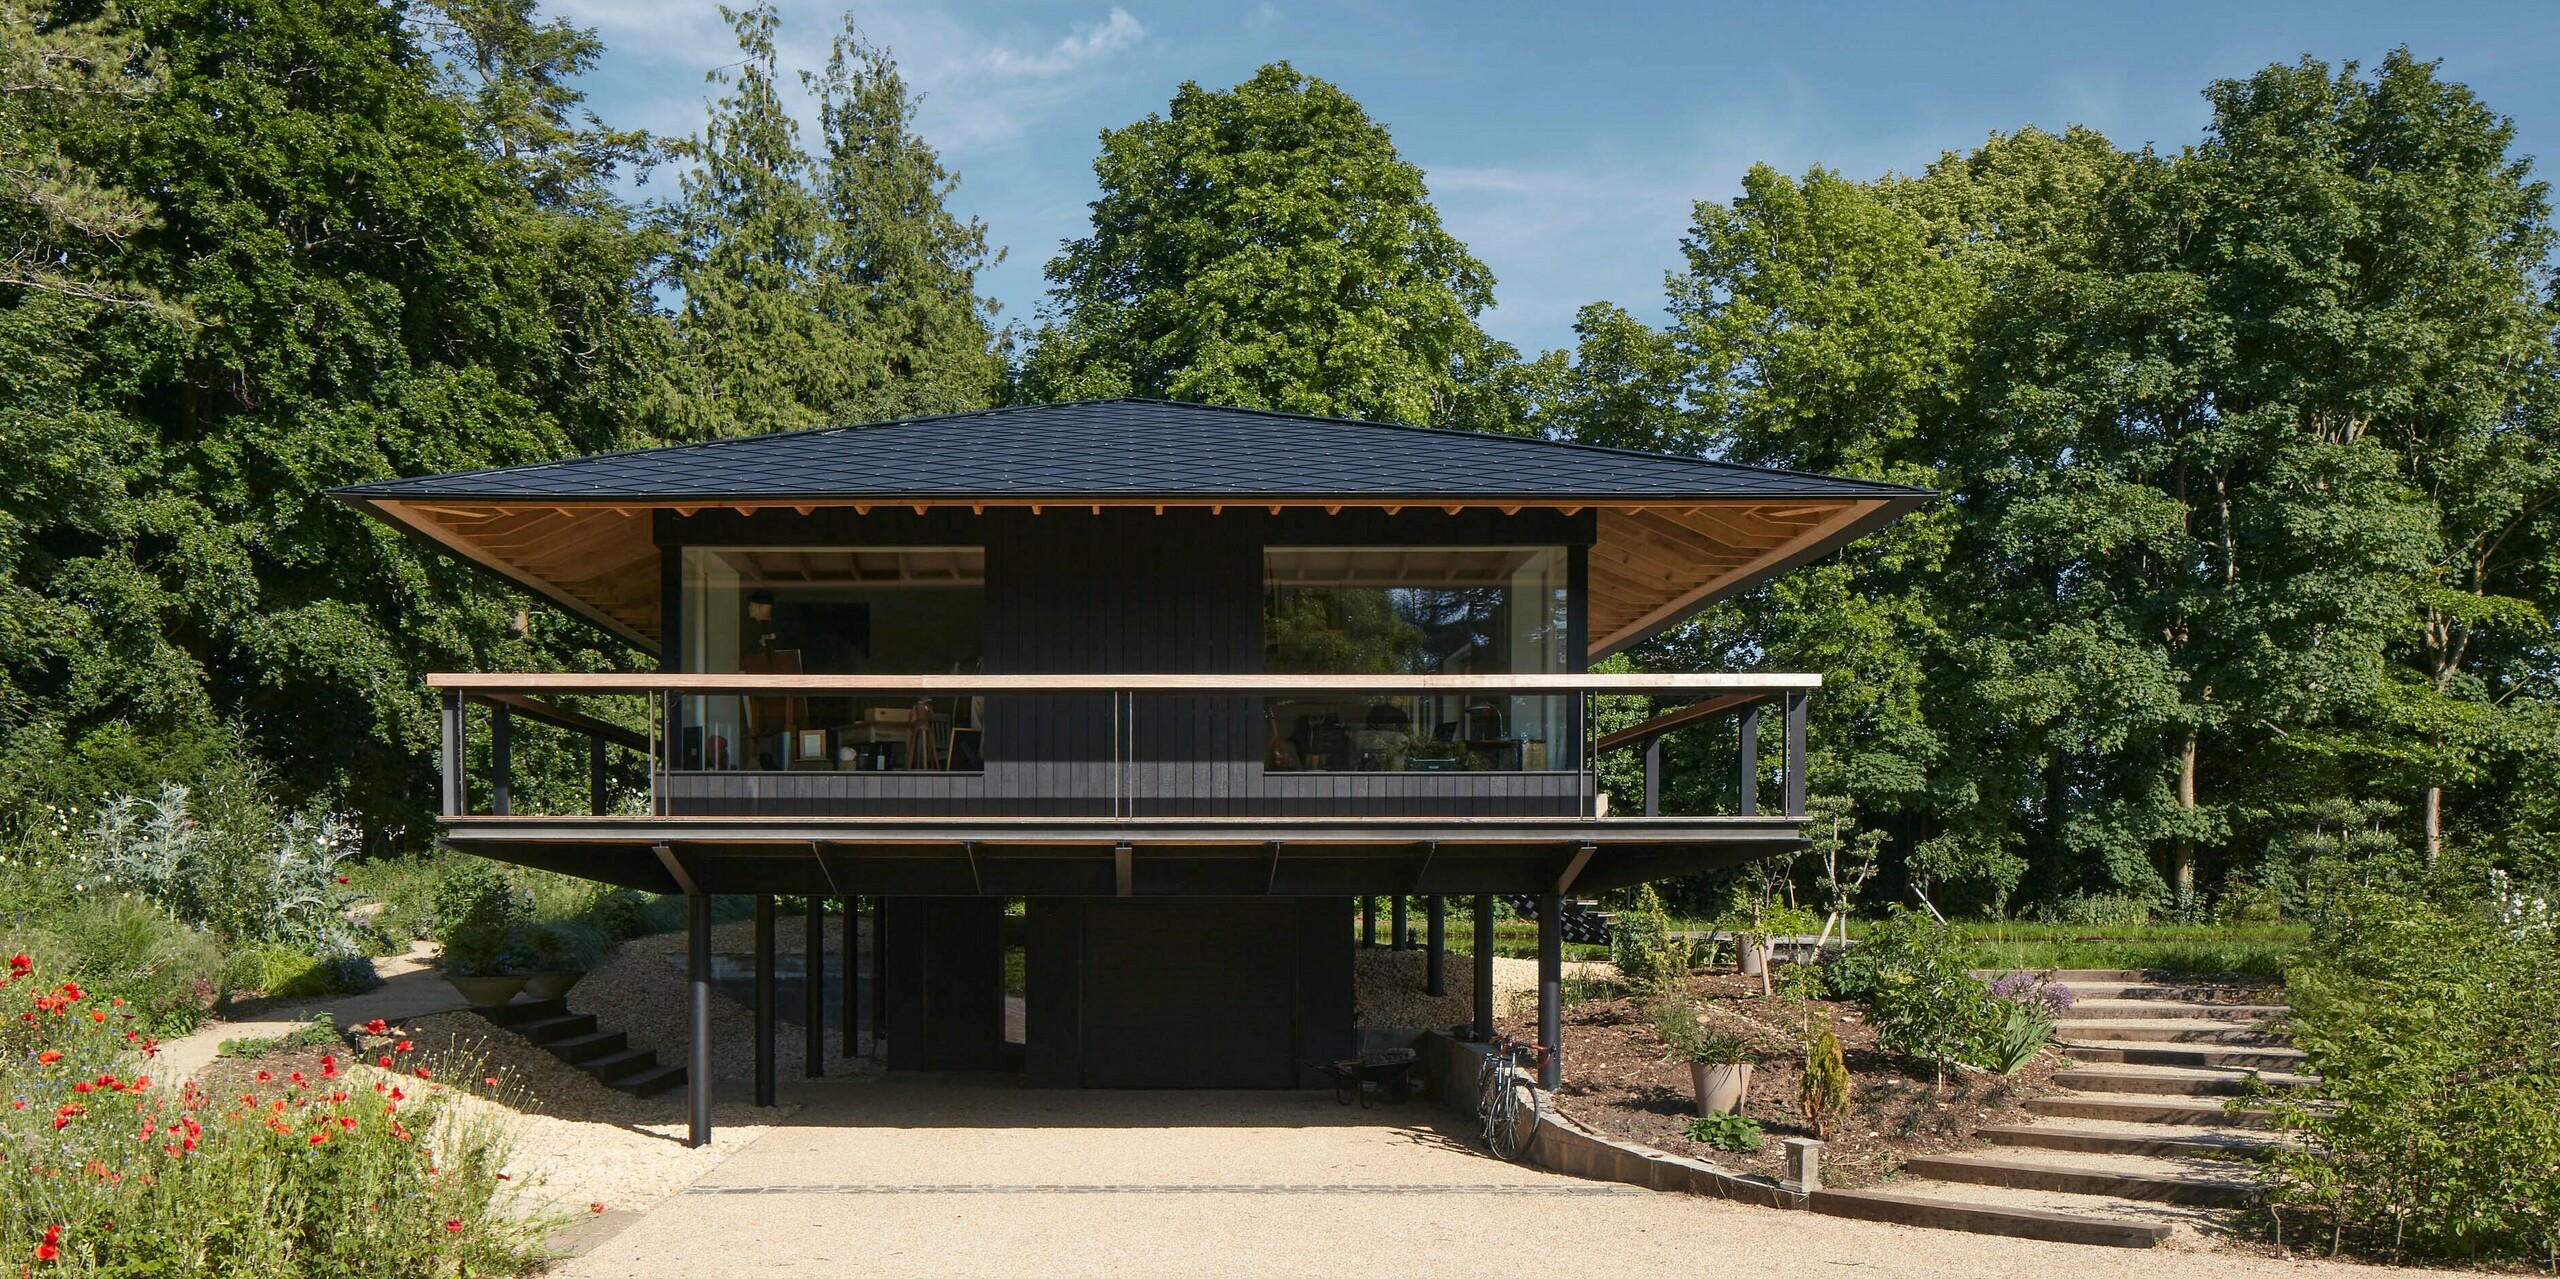 Ein Wohnprojekt mit PREFA Dachraute 44x44 in anthrazit in der Nähe Cirencester, UK, designed by Hamish & Lyons